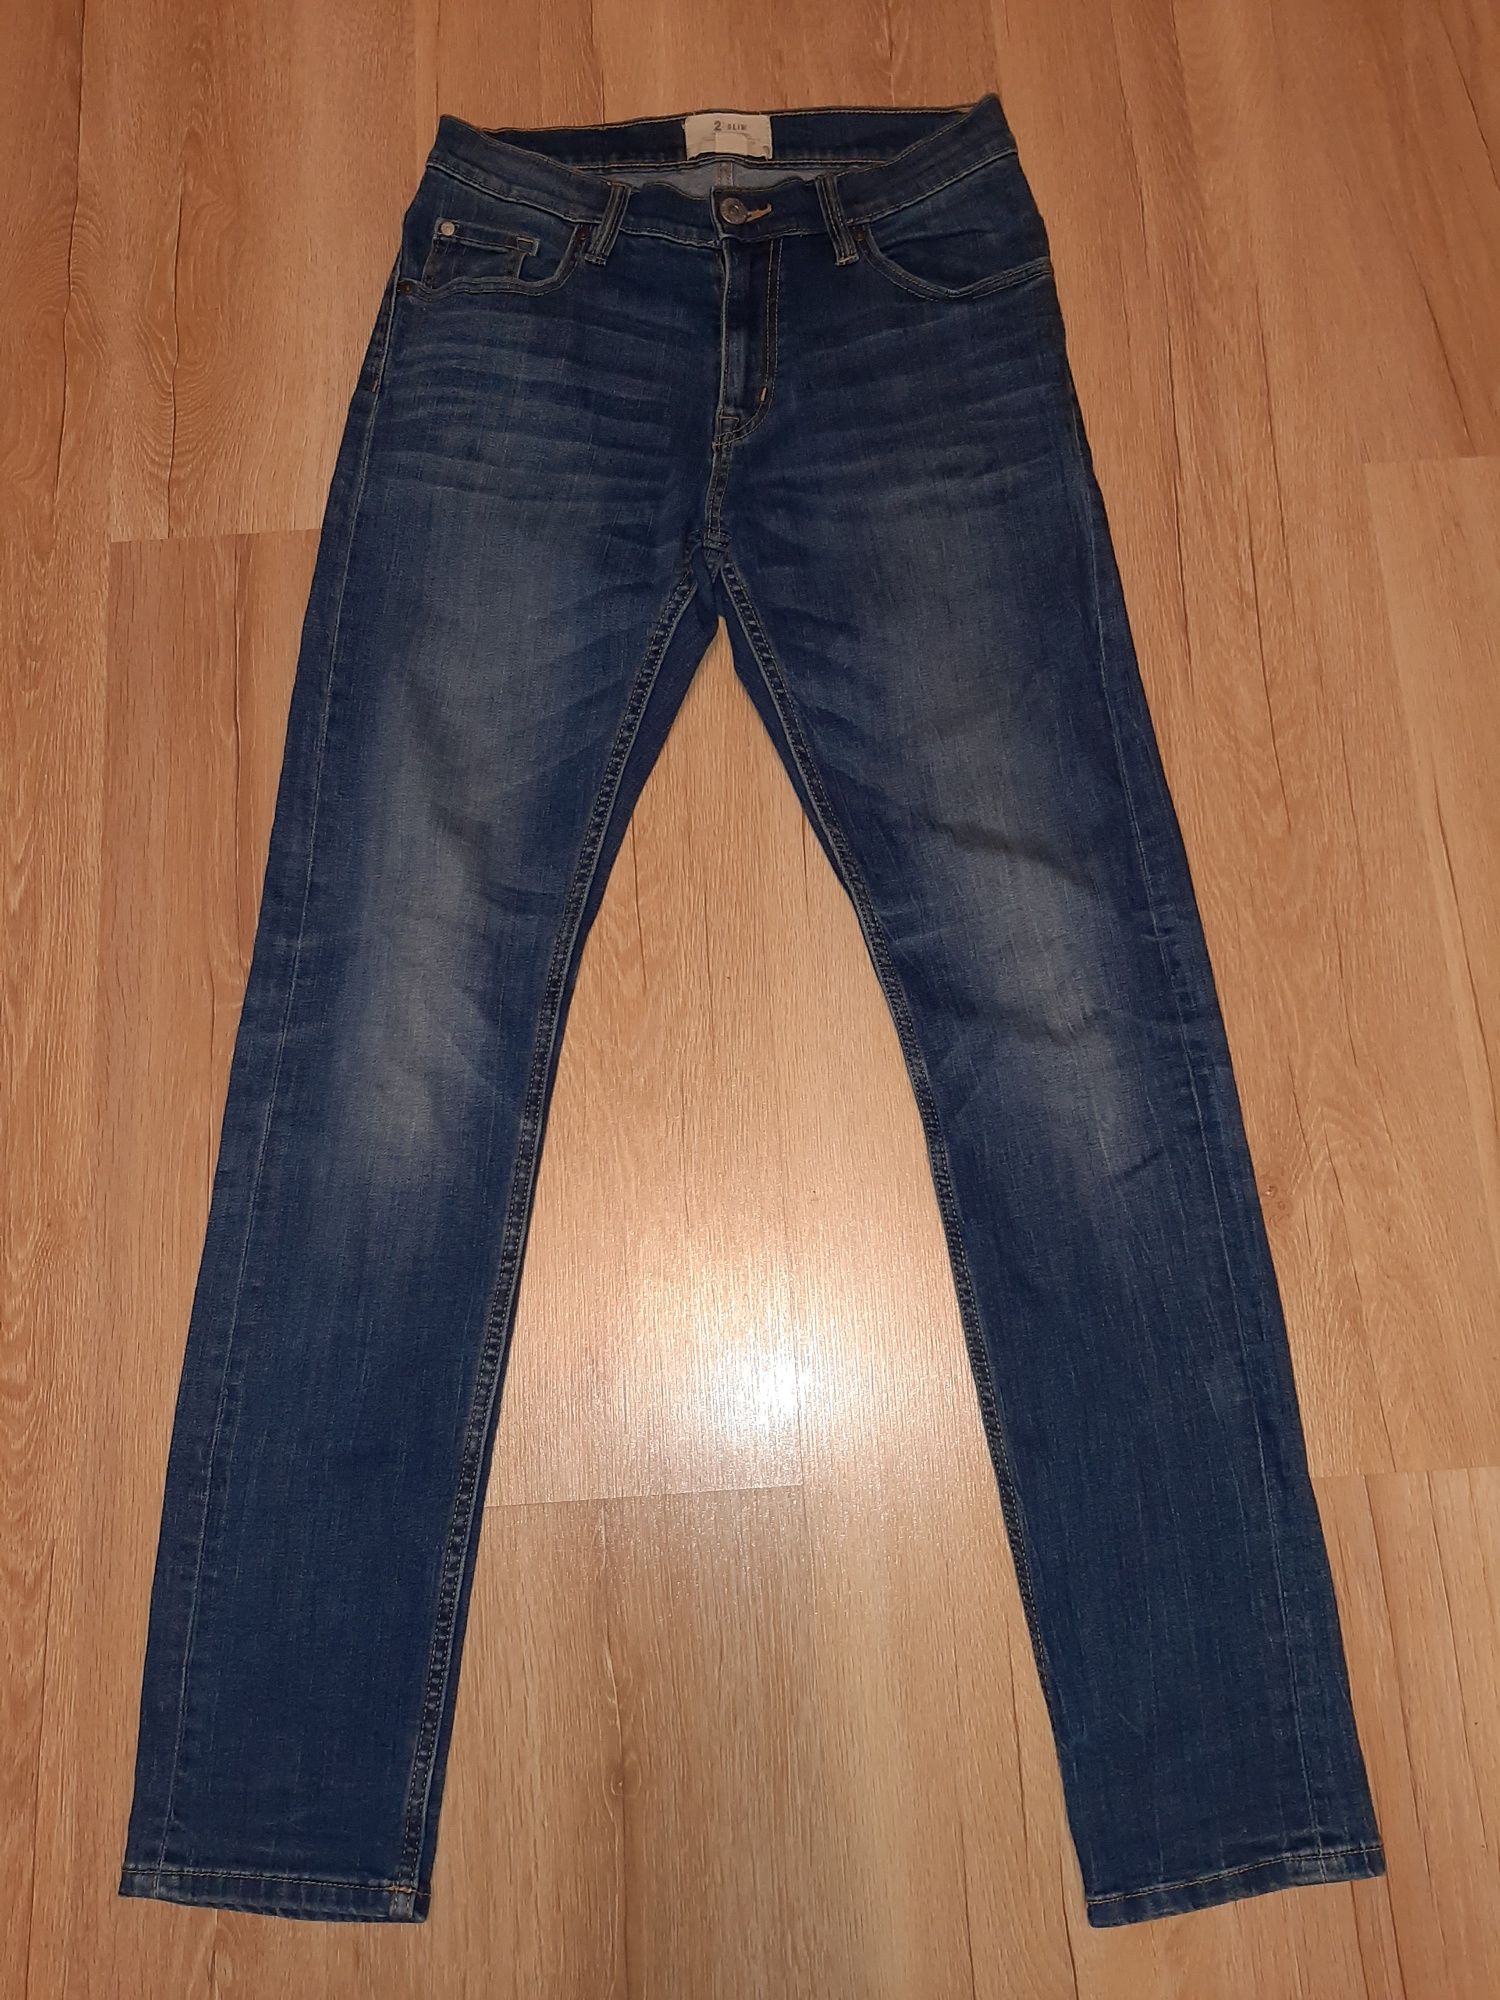 Spodnie jeans Cubus rozm.29/32, prosta nogawka